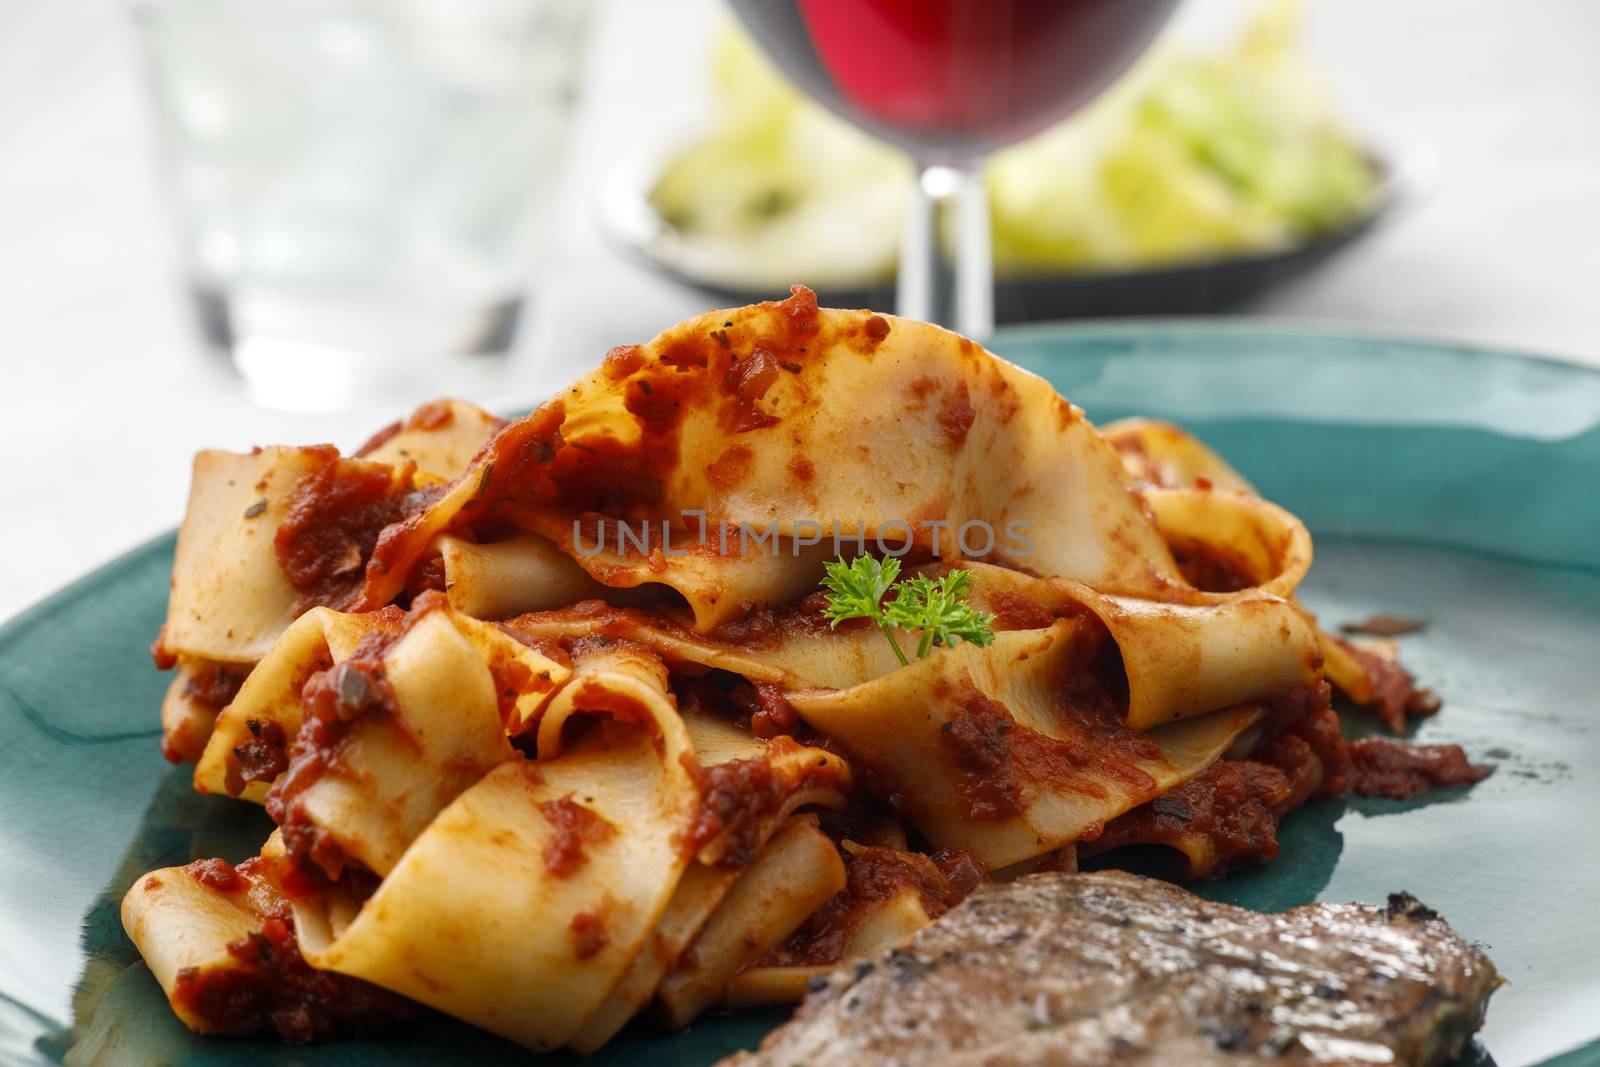 tagliatelli pasta with a steak